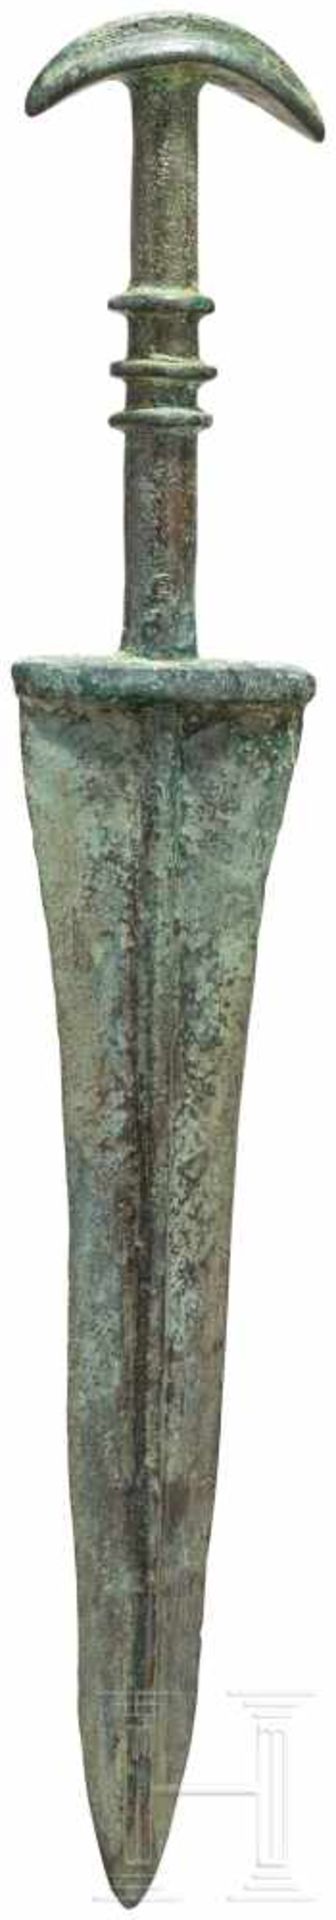 Vollgriffdolch, Luristan - iranisch, Ende 2. - frühes 1. Jtsd. v. Chr.Spitz nach unten zulaufende - Bild 2 aus 2